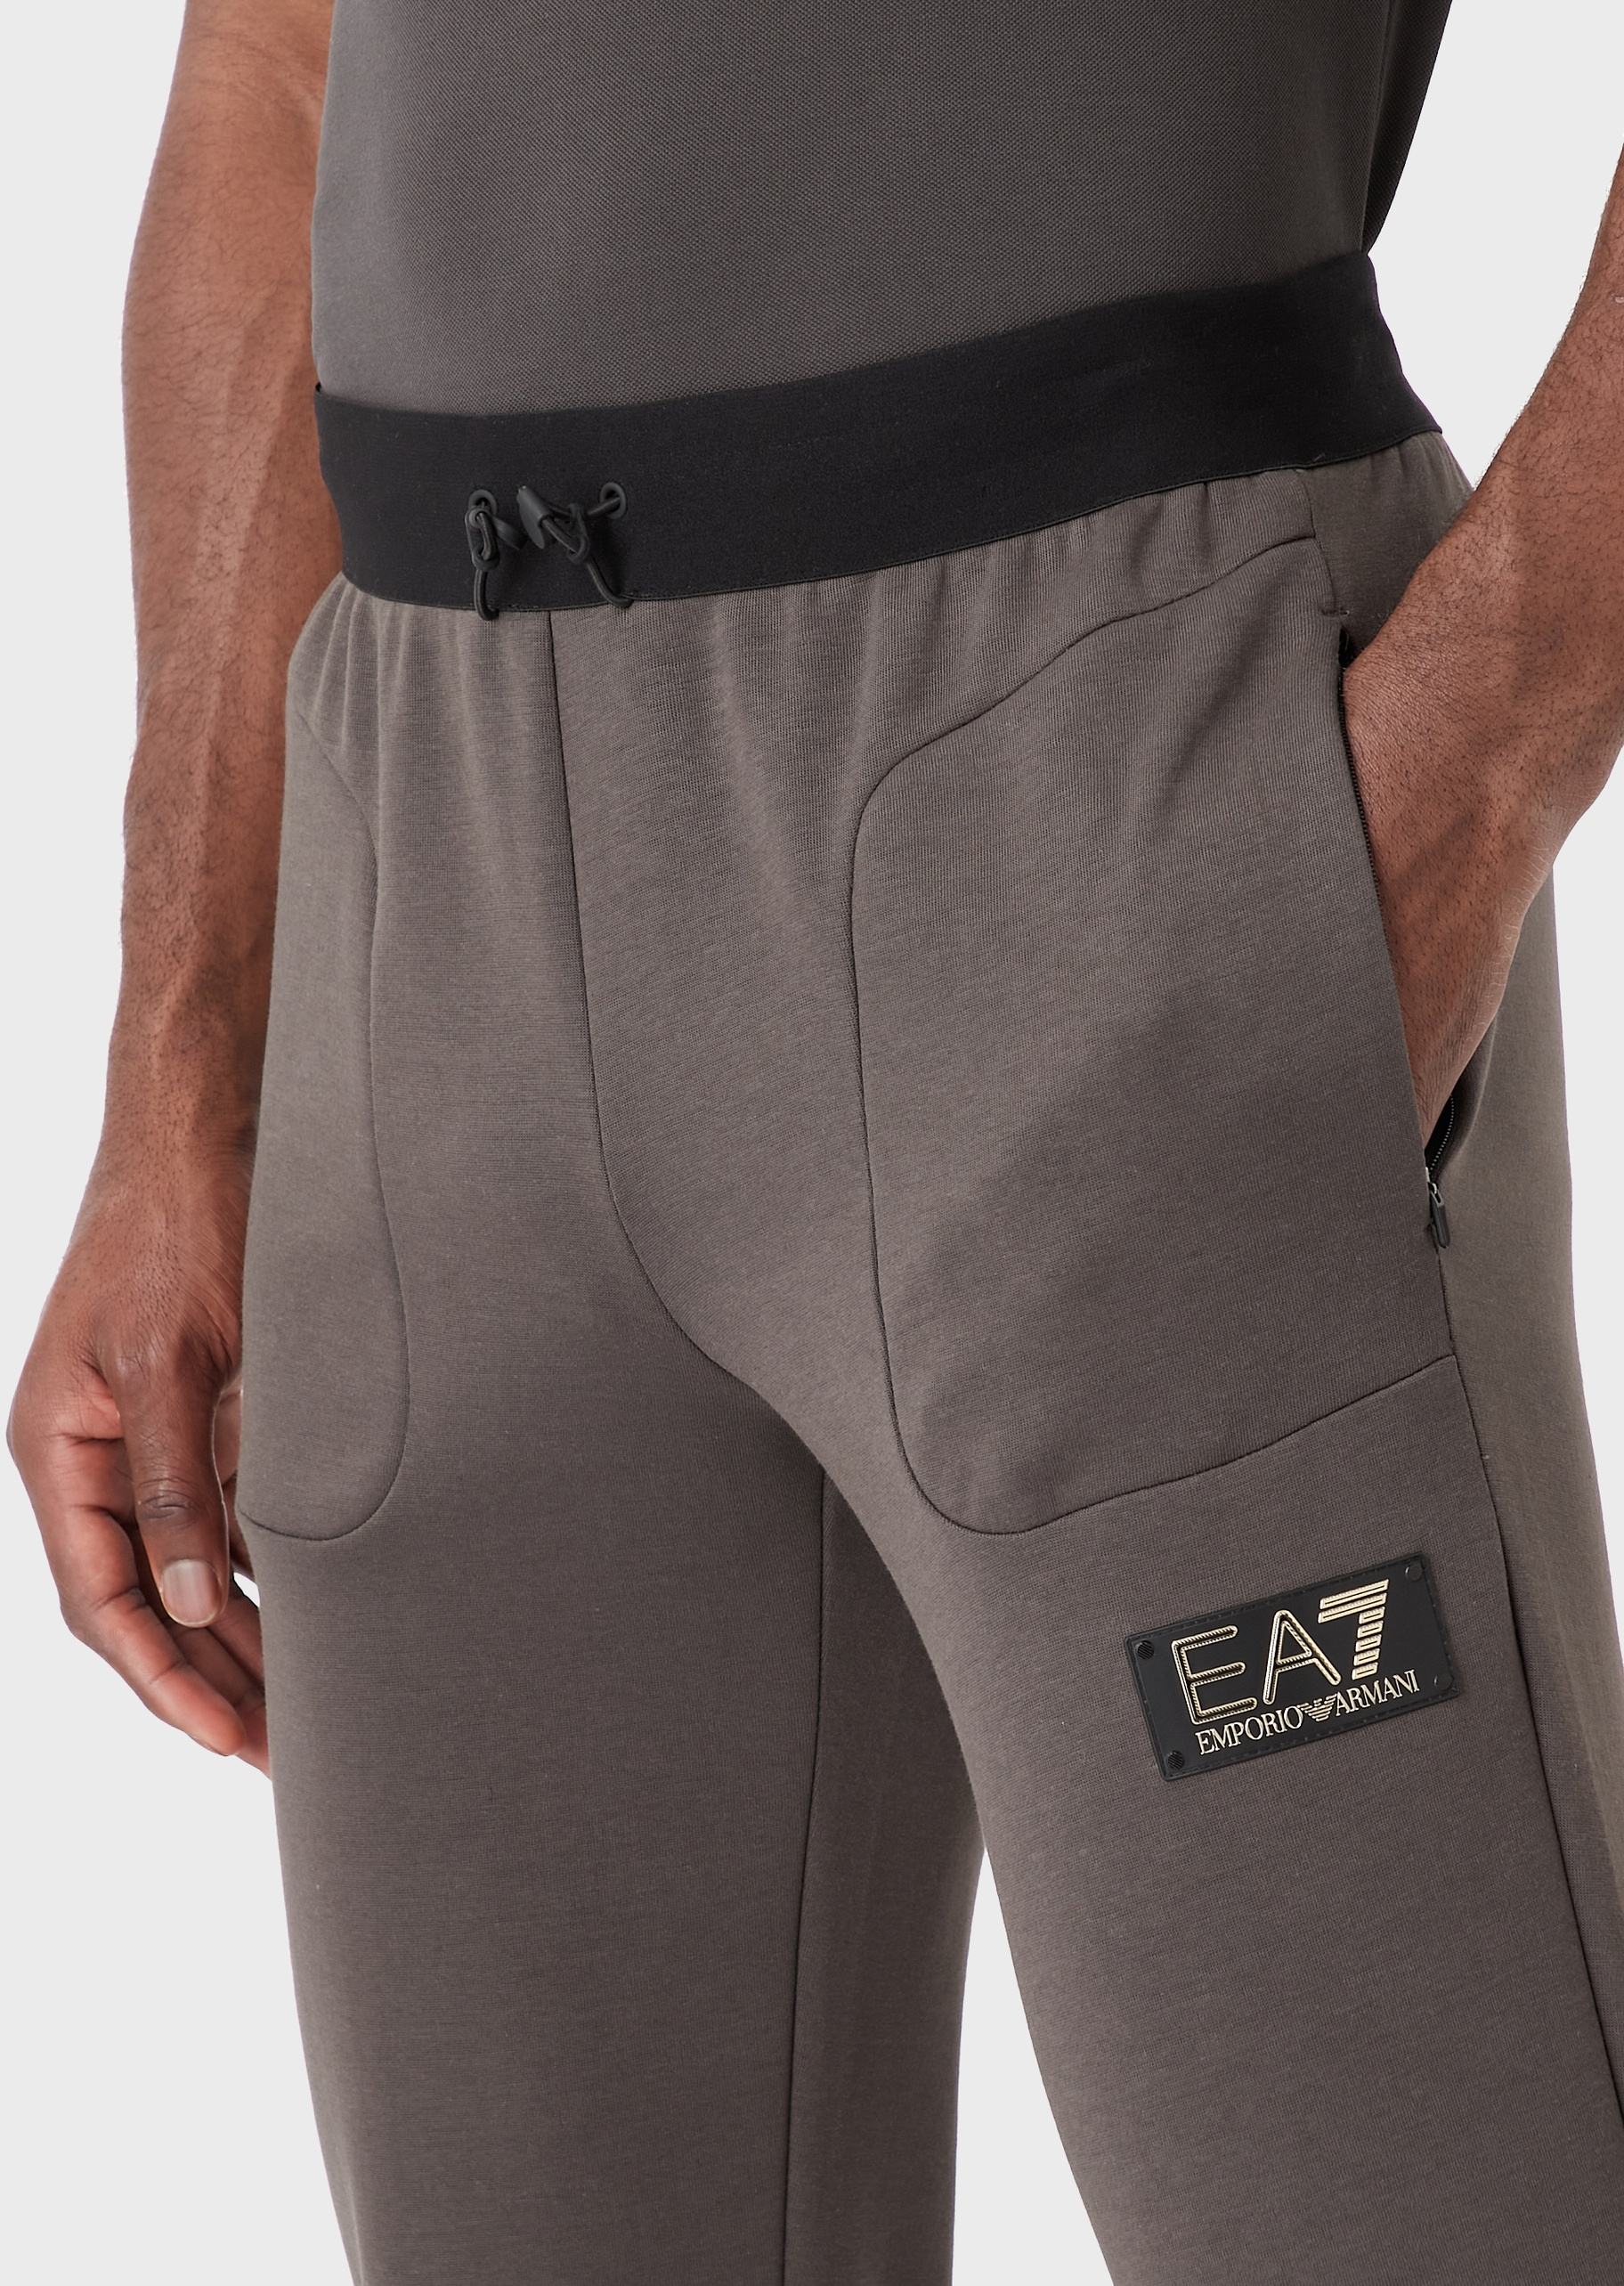 EA7 金色标识慢跑卫裤